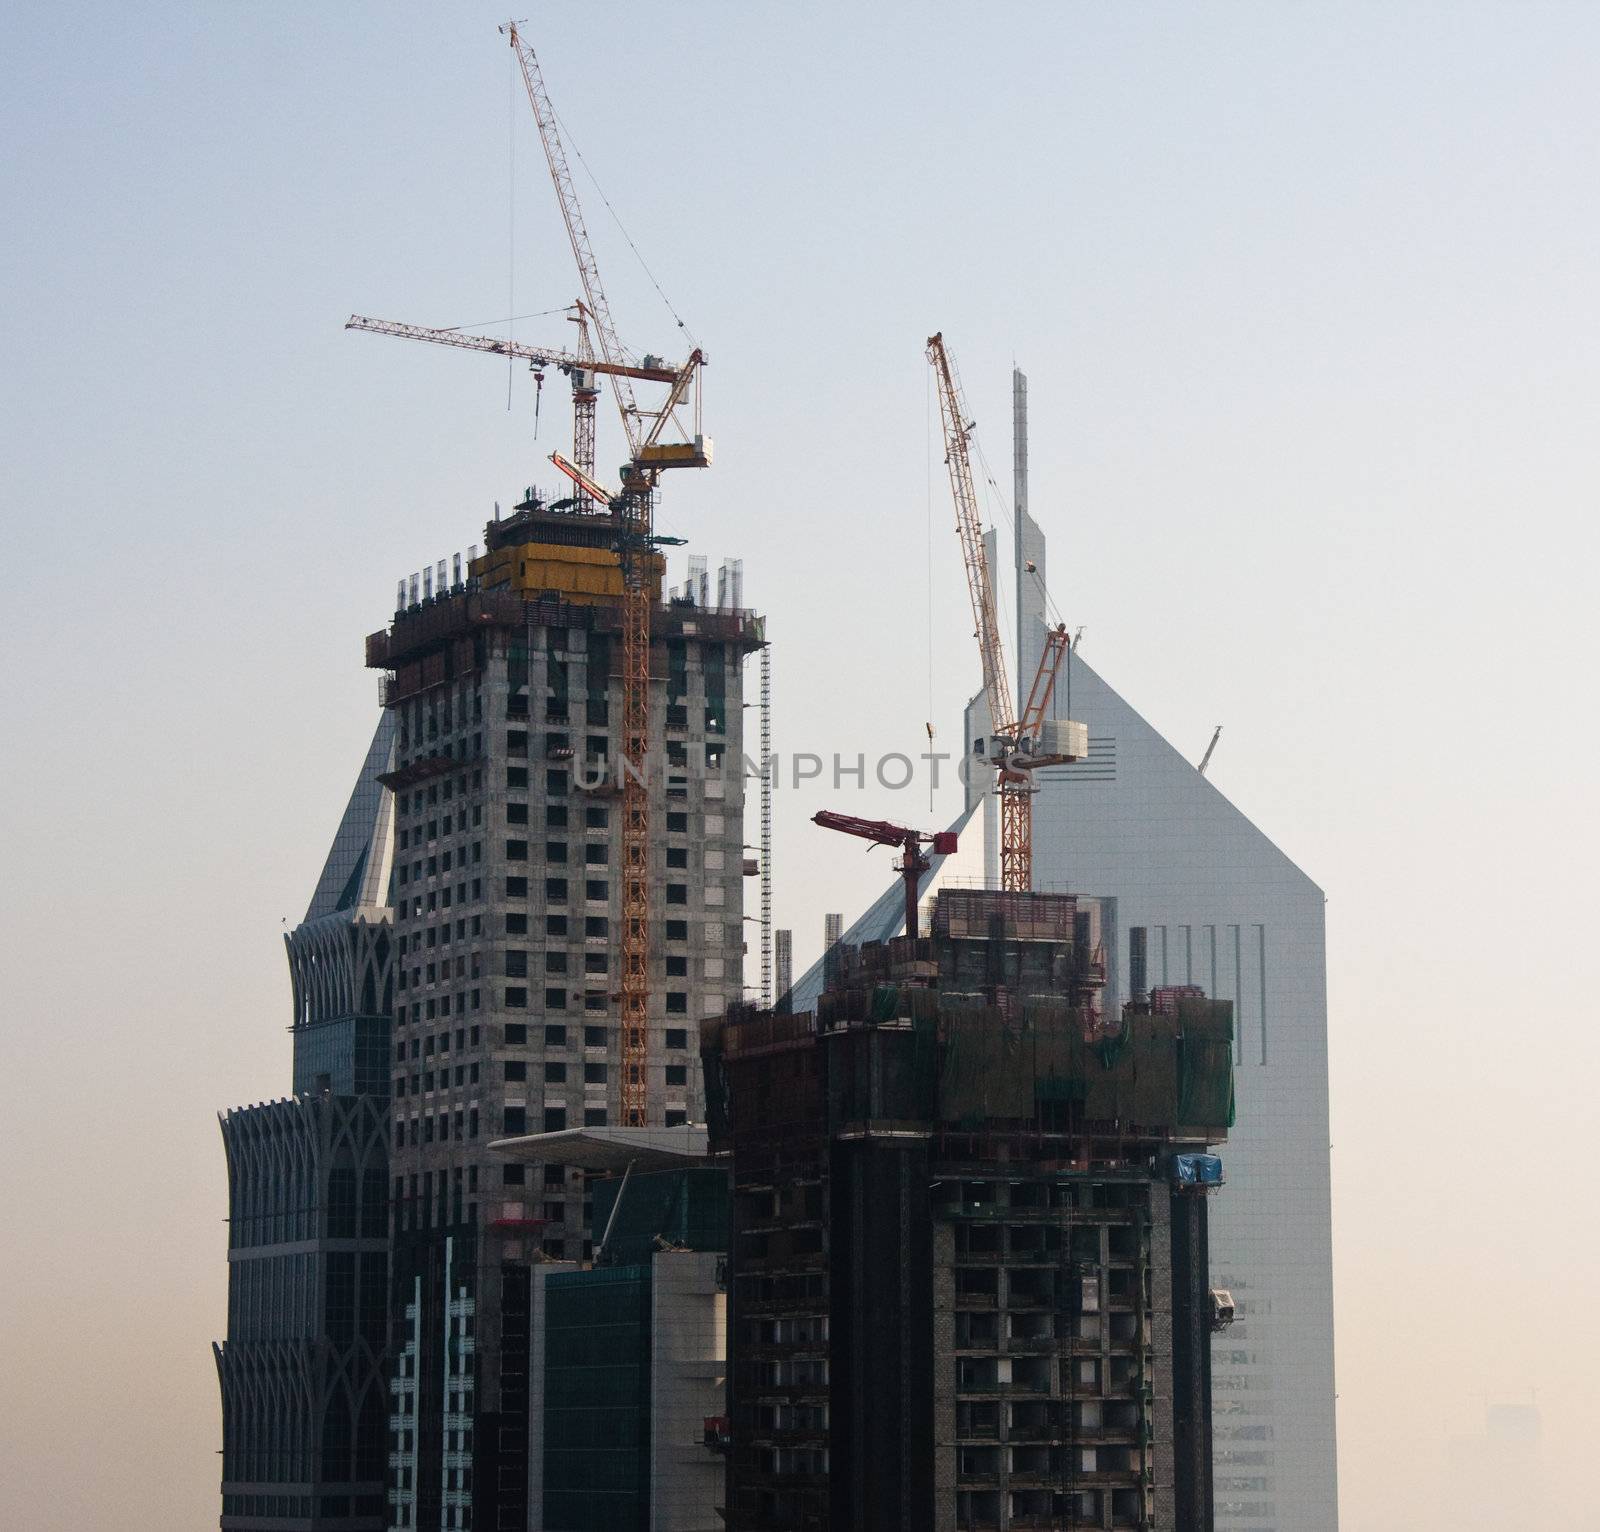 Towering city skyscraper blocks in Dubai